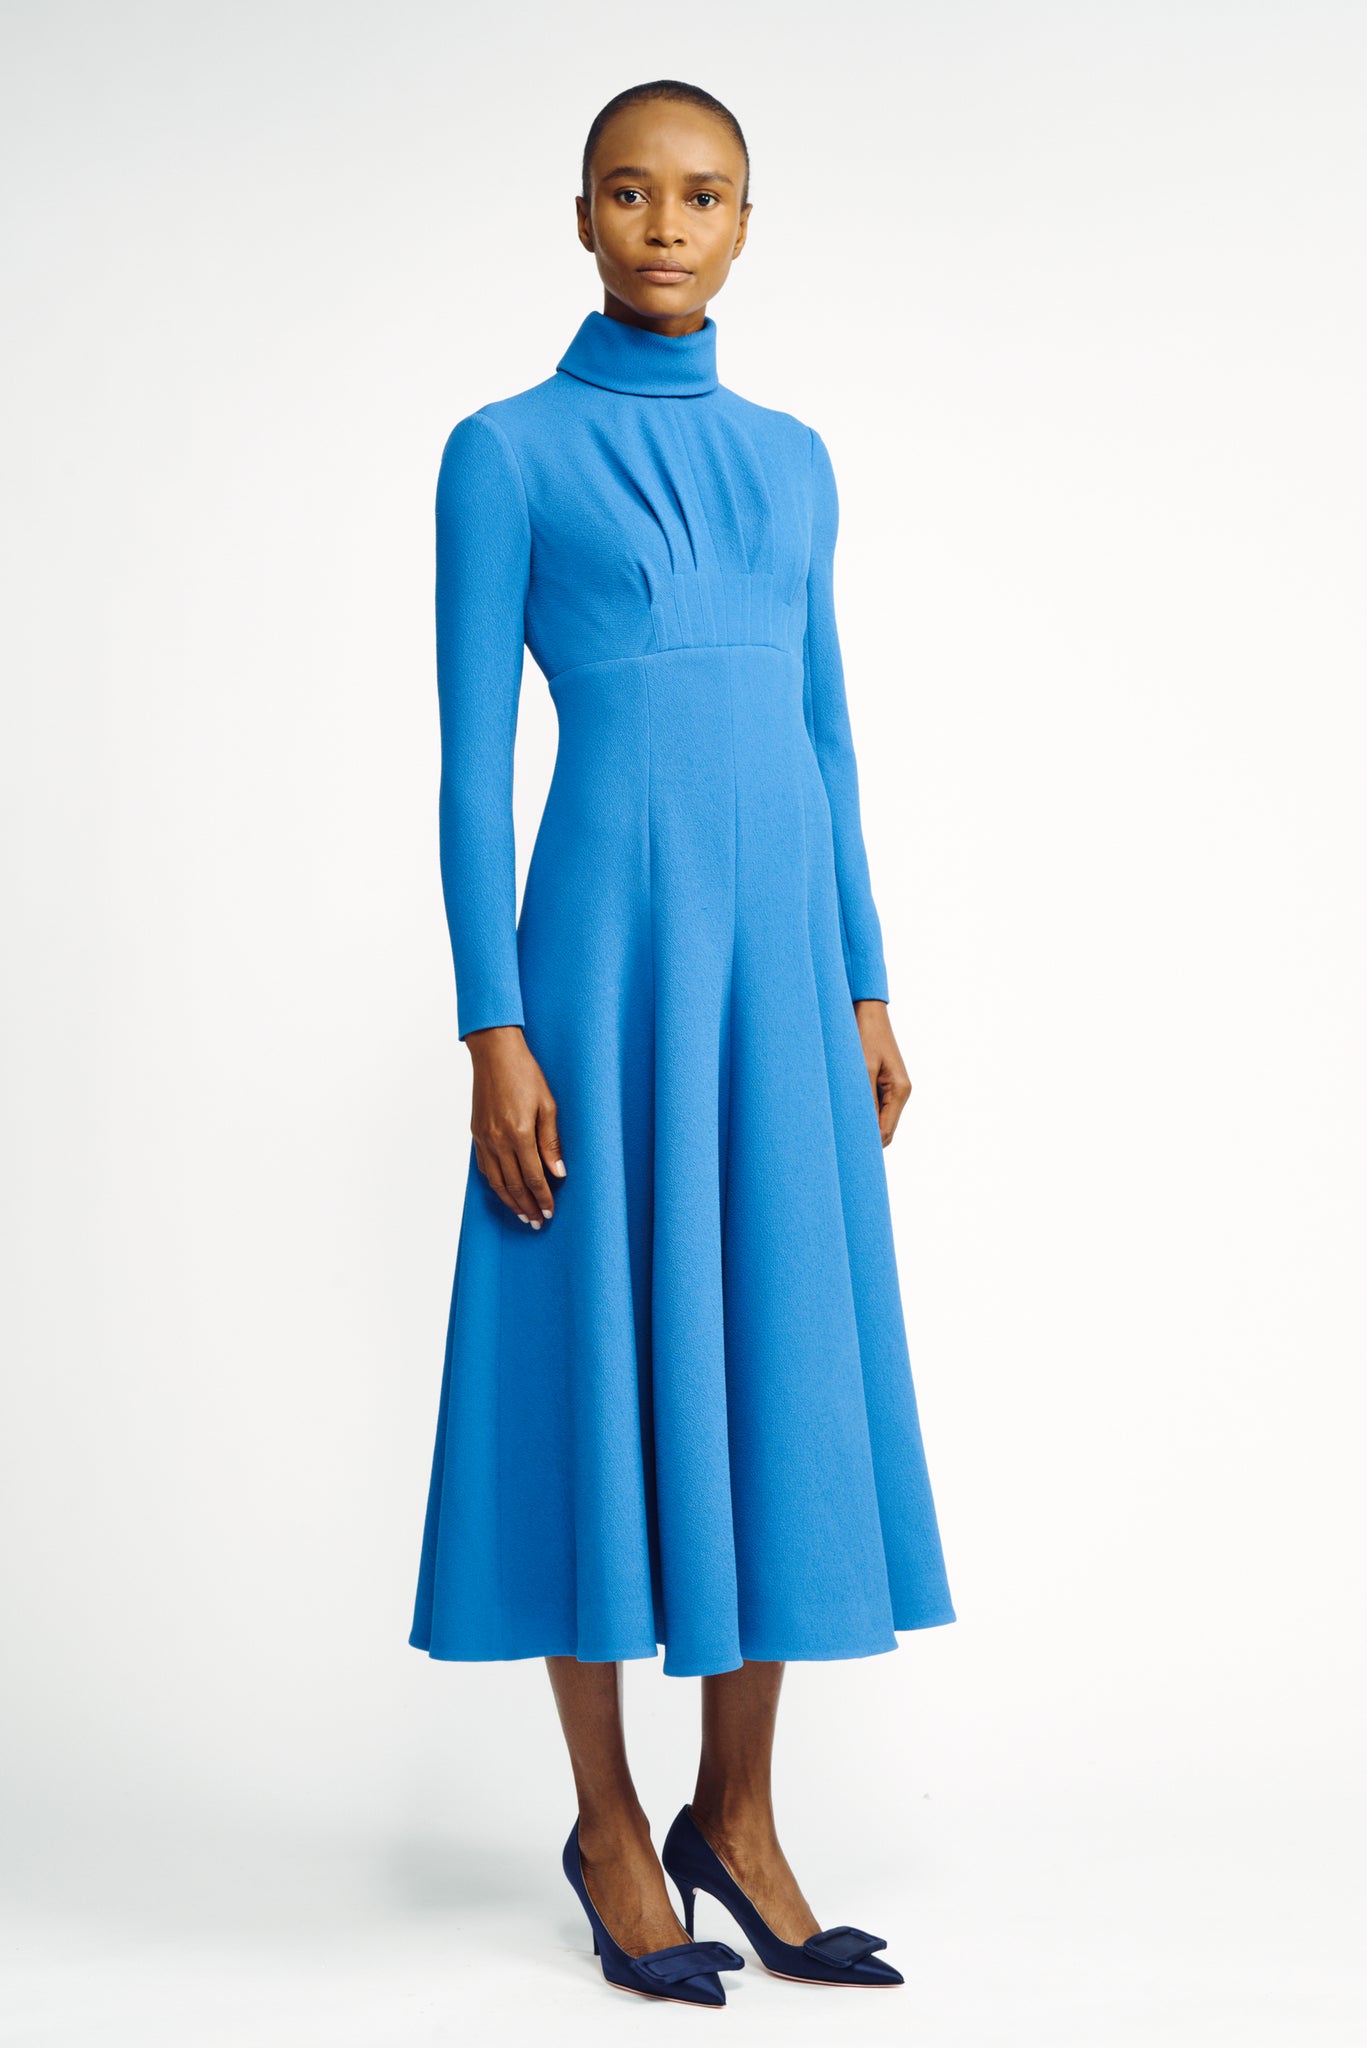 Oakley Dress | Blue Long Sleeve High Neck Dress | Emilia Wickstead